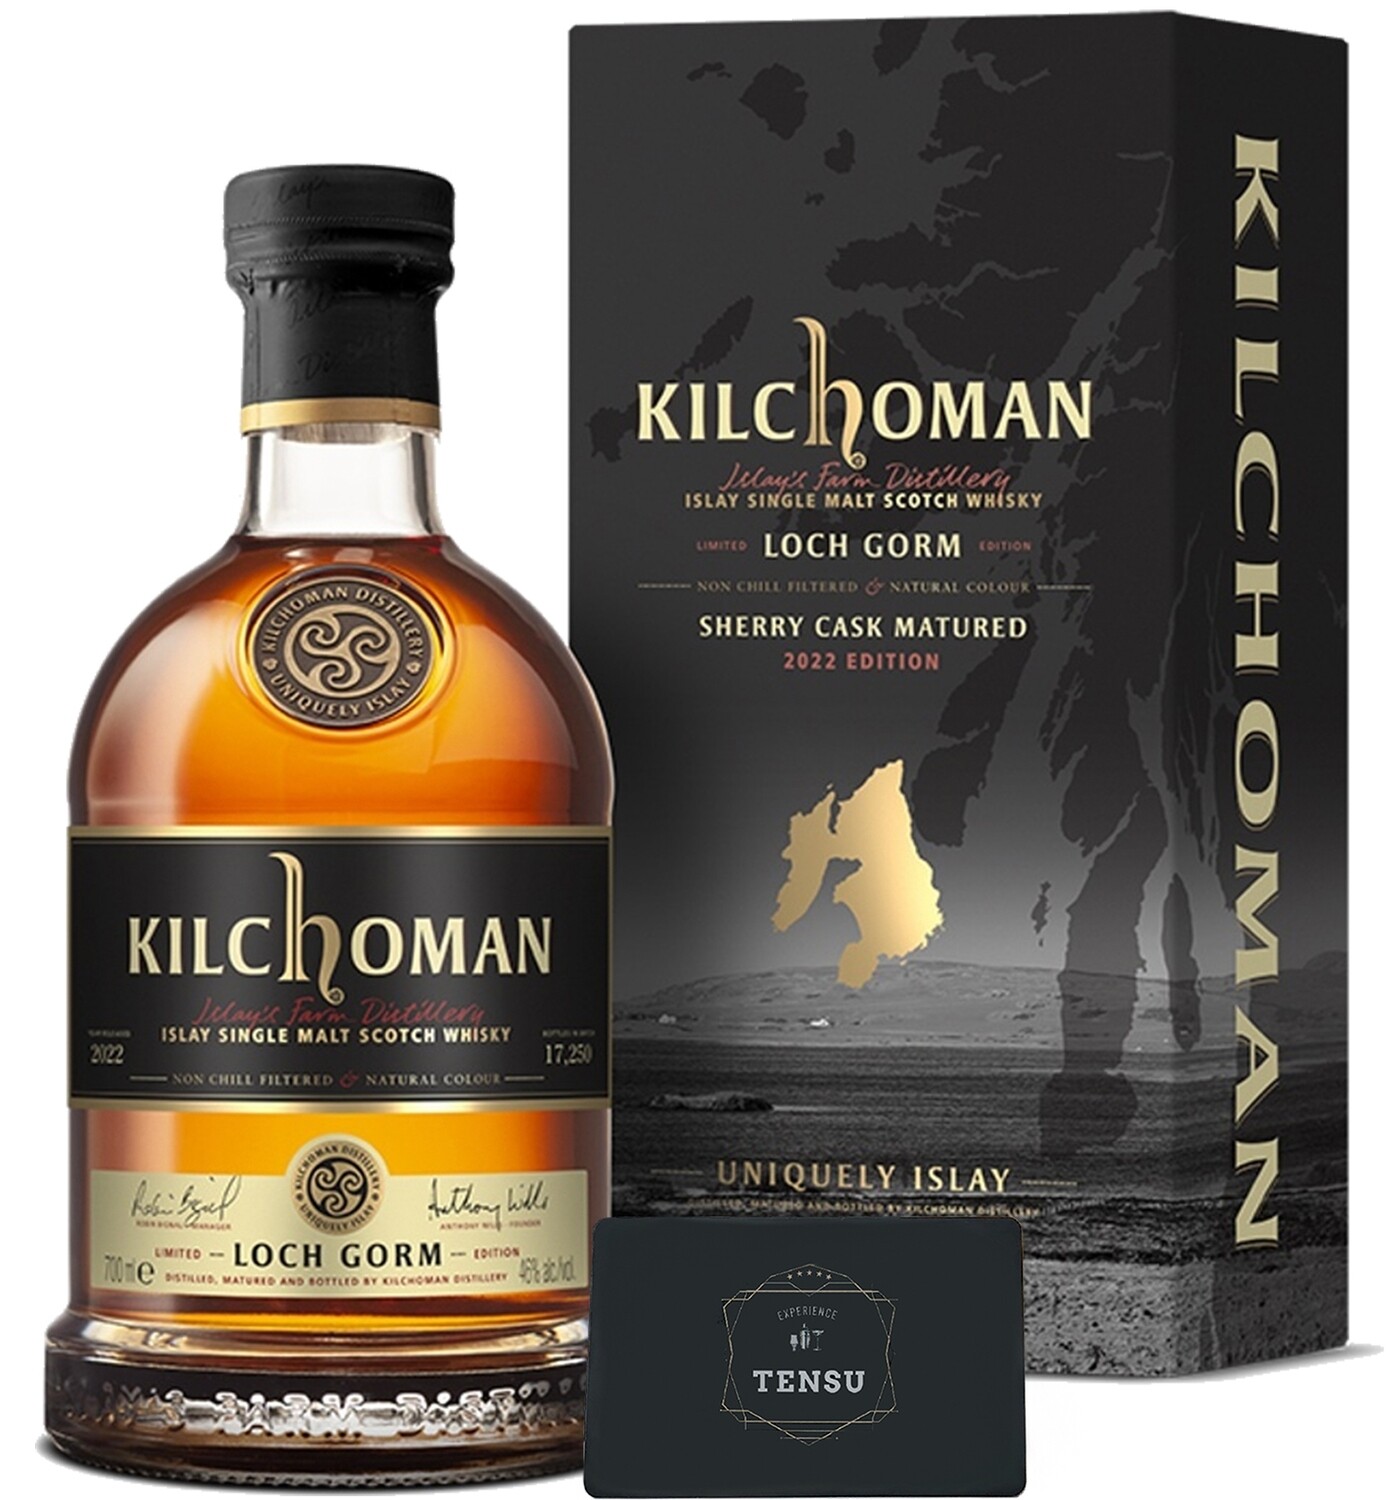 Kilchoman Loch Gorm "2022 Edition" 46.0 OB